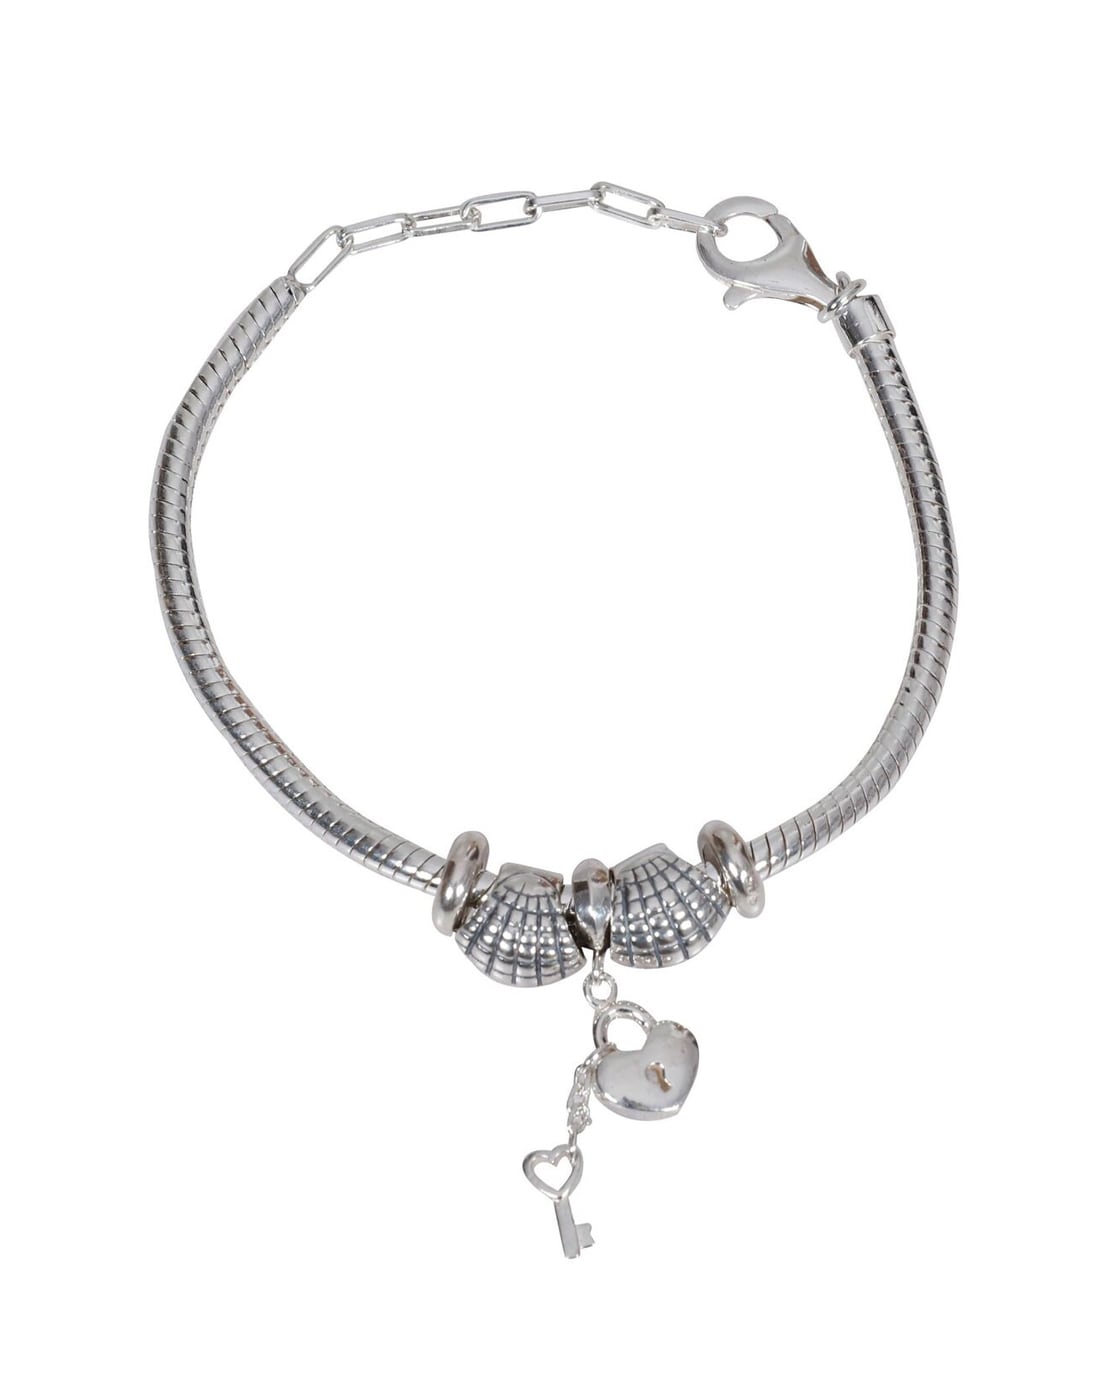 Sterling Silver Flat Heart Link Charm Bracelet Nickel Free Chain Italy –  www.joyful-creations.com